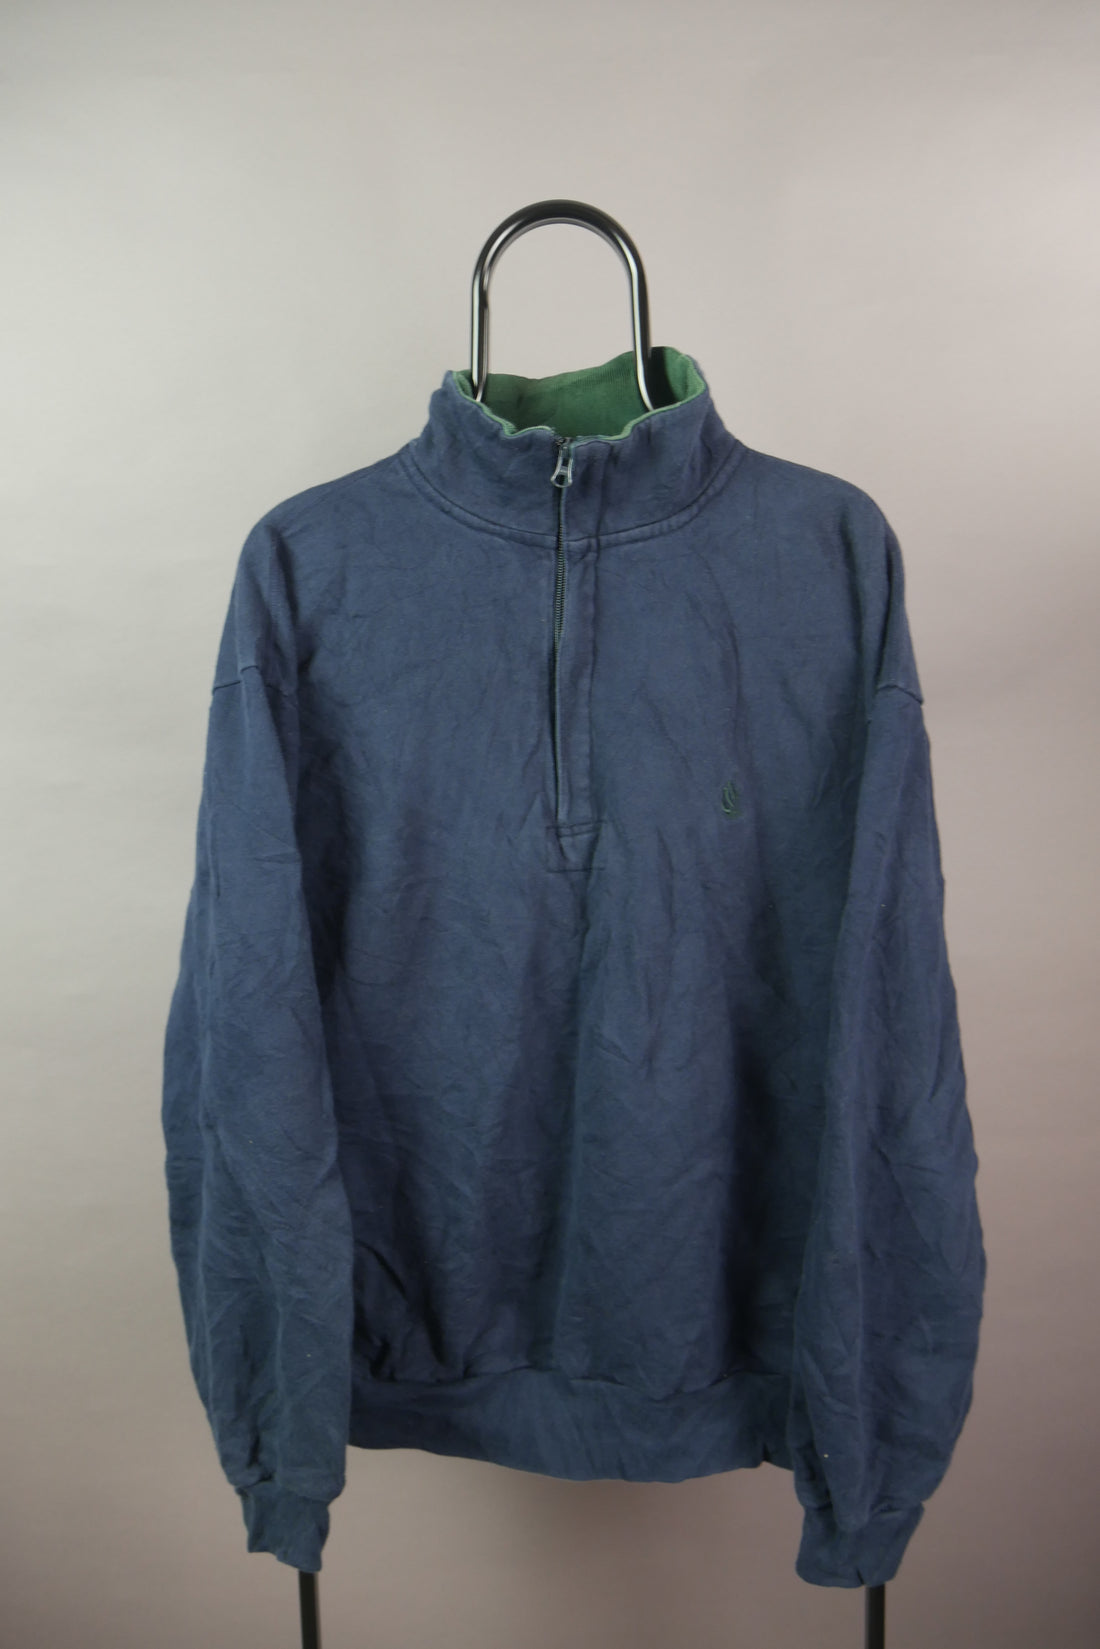 The Nautica 1/4 Zip Sweatshirt (XL)